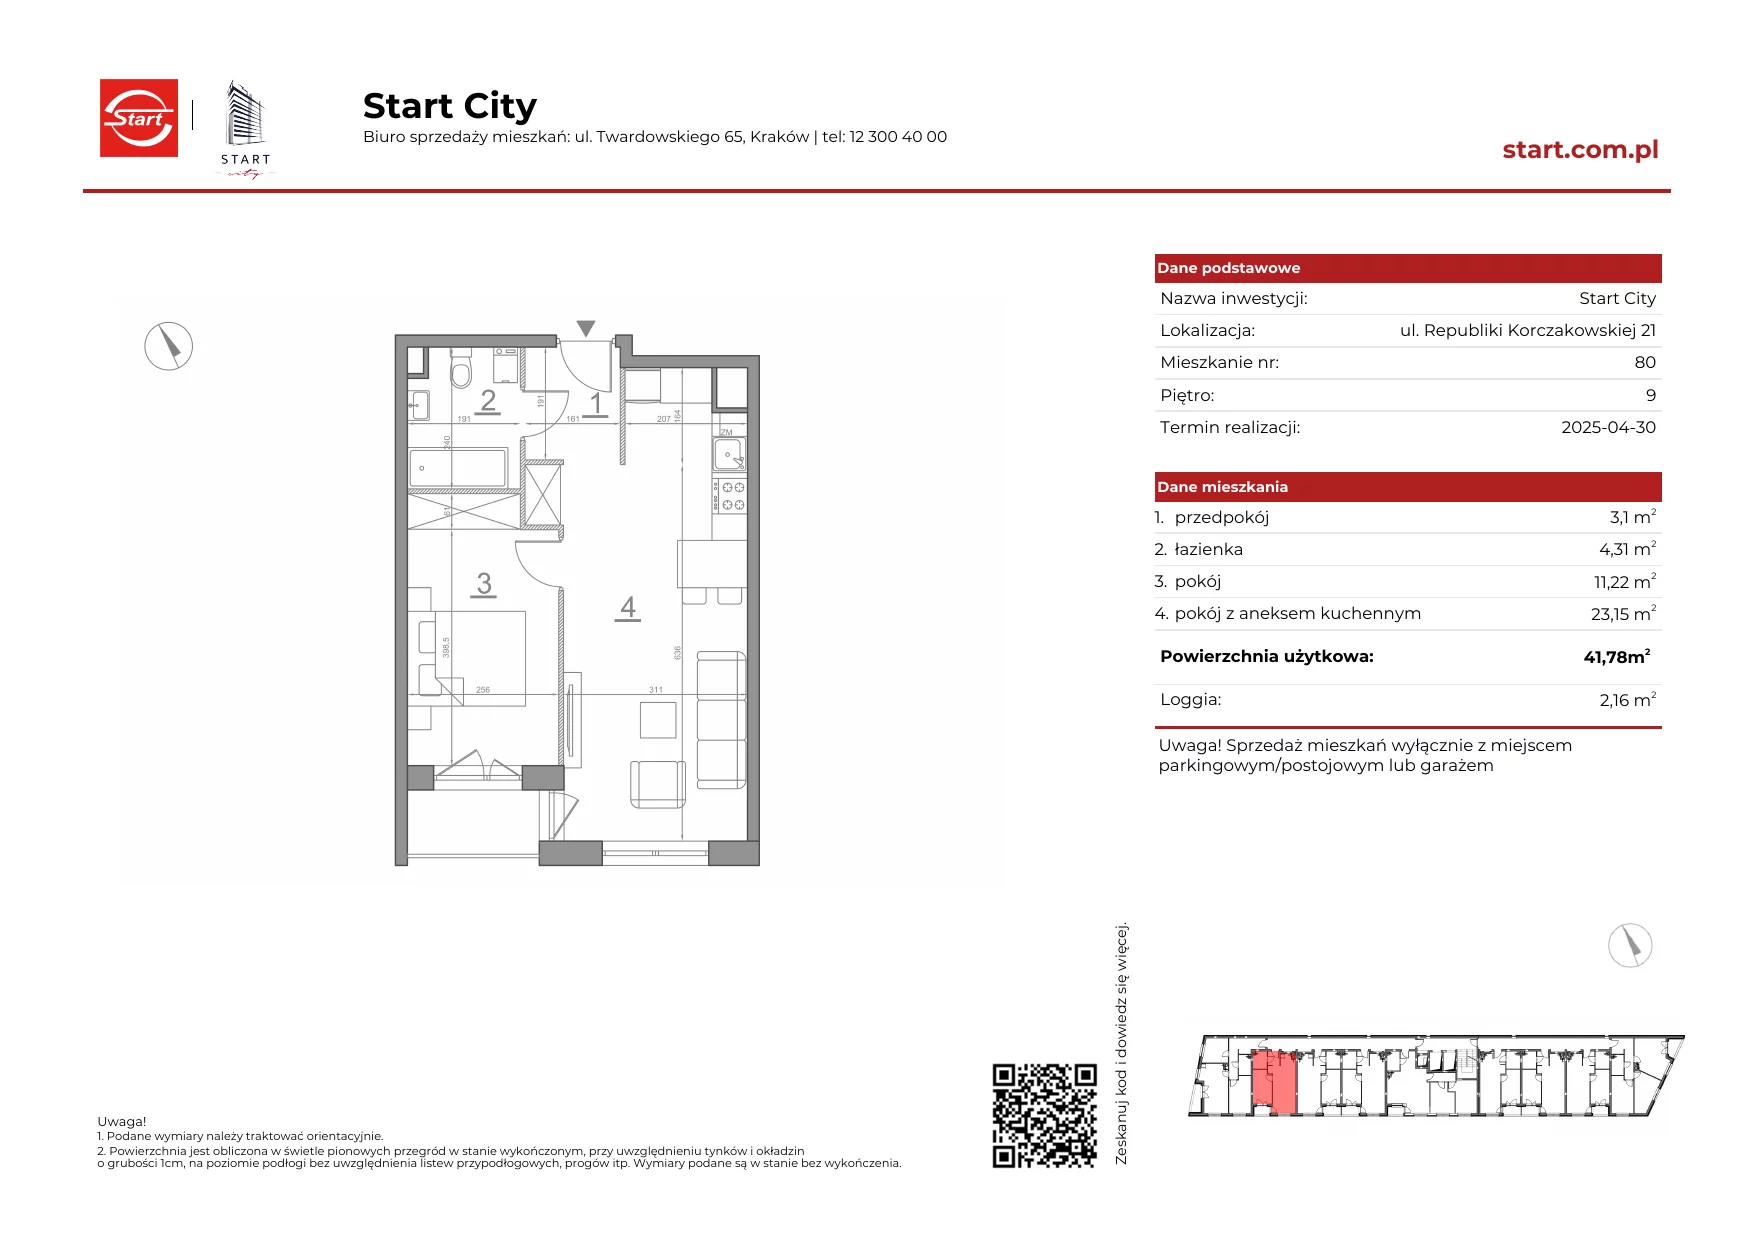 Mieszkanie 41,78 m², piętro 9, oferta nr 21/80, Start City, Kraków, Bieżanów-Prokocim, ul. Republiki Korczakowskiej 21